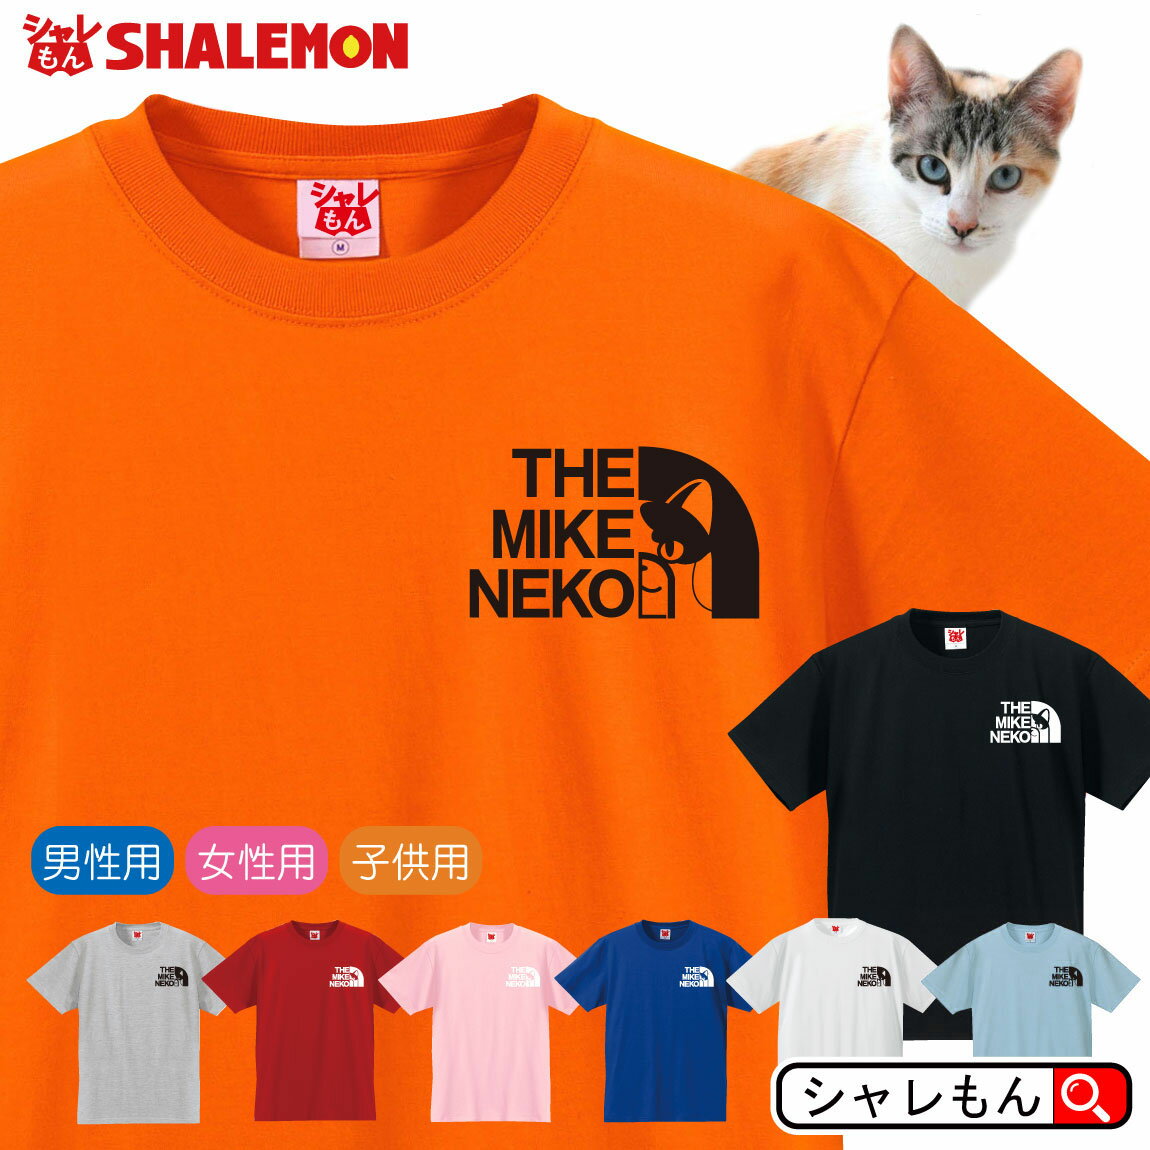 三毛猫 おもしろTシャツ 【 選べる8色 Tシャツ 三毛猫 フェイス 】 ネコ 猫 ねこ グッズ ホームズ 日本猫 人気 しゃれもん